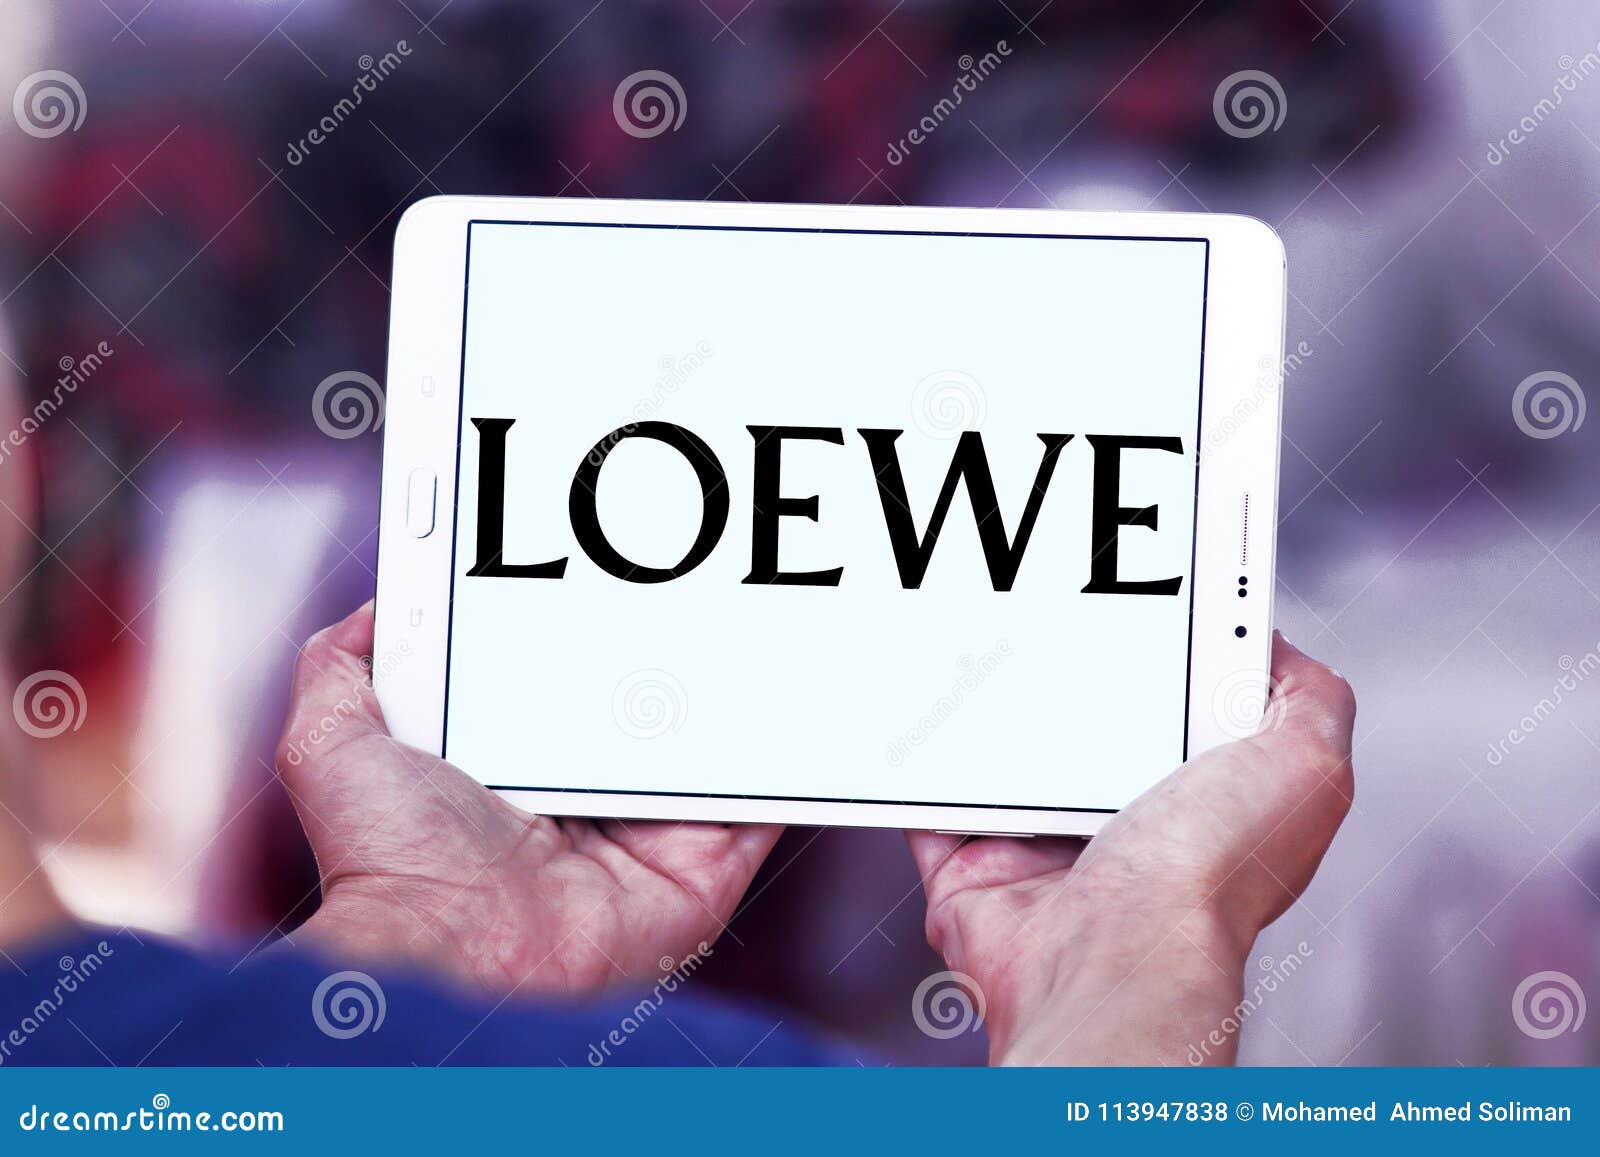 loewe lvmh group